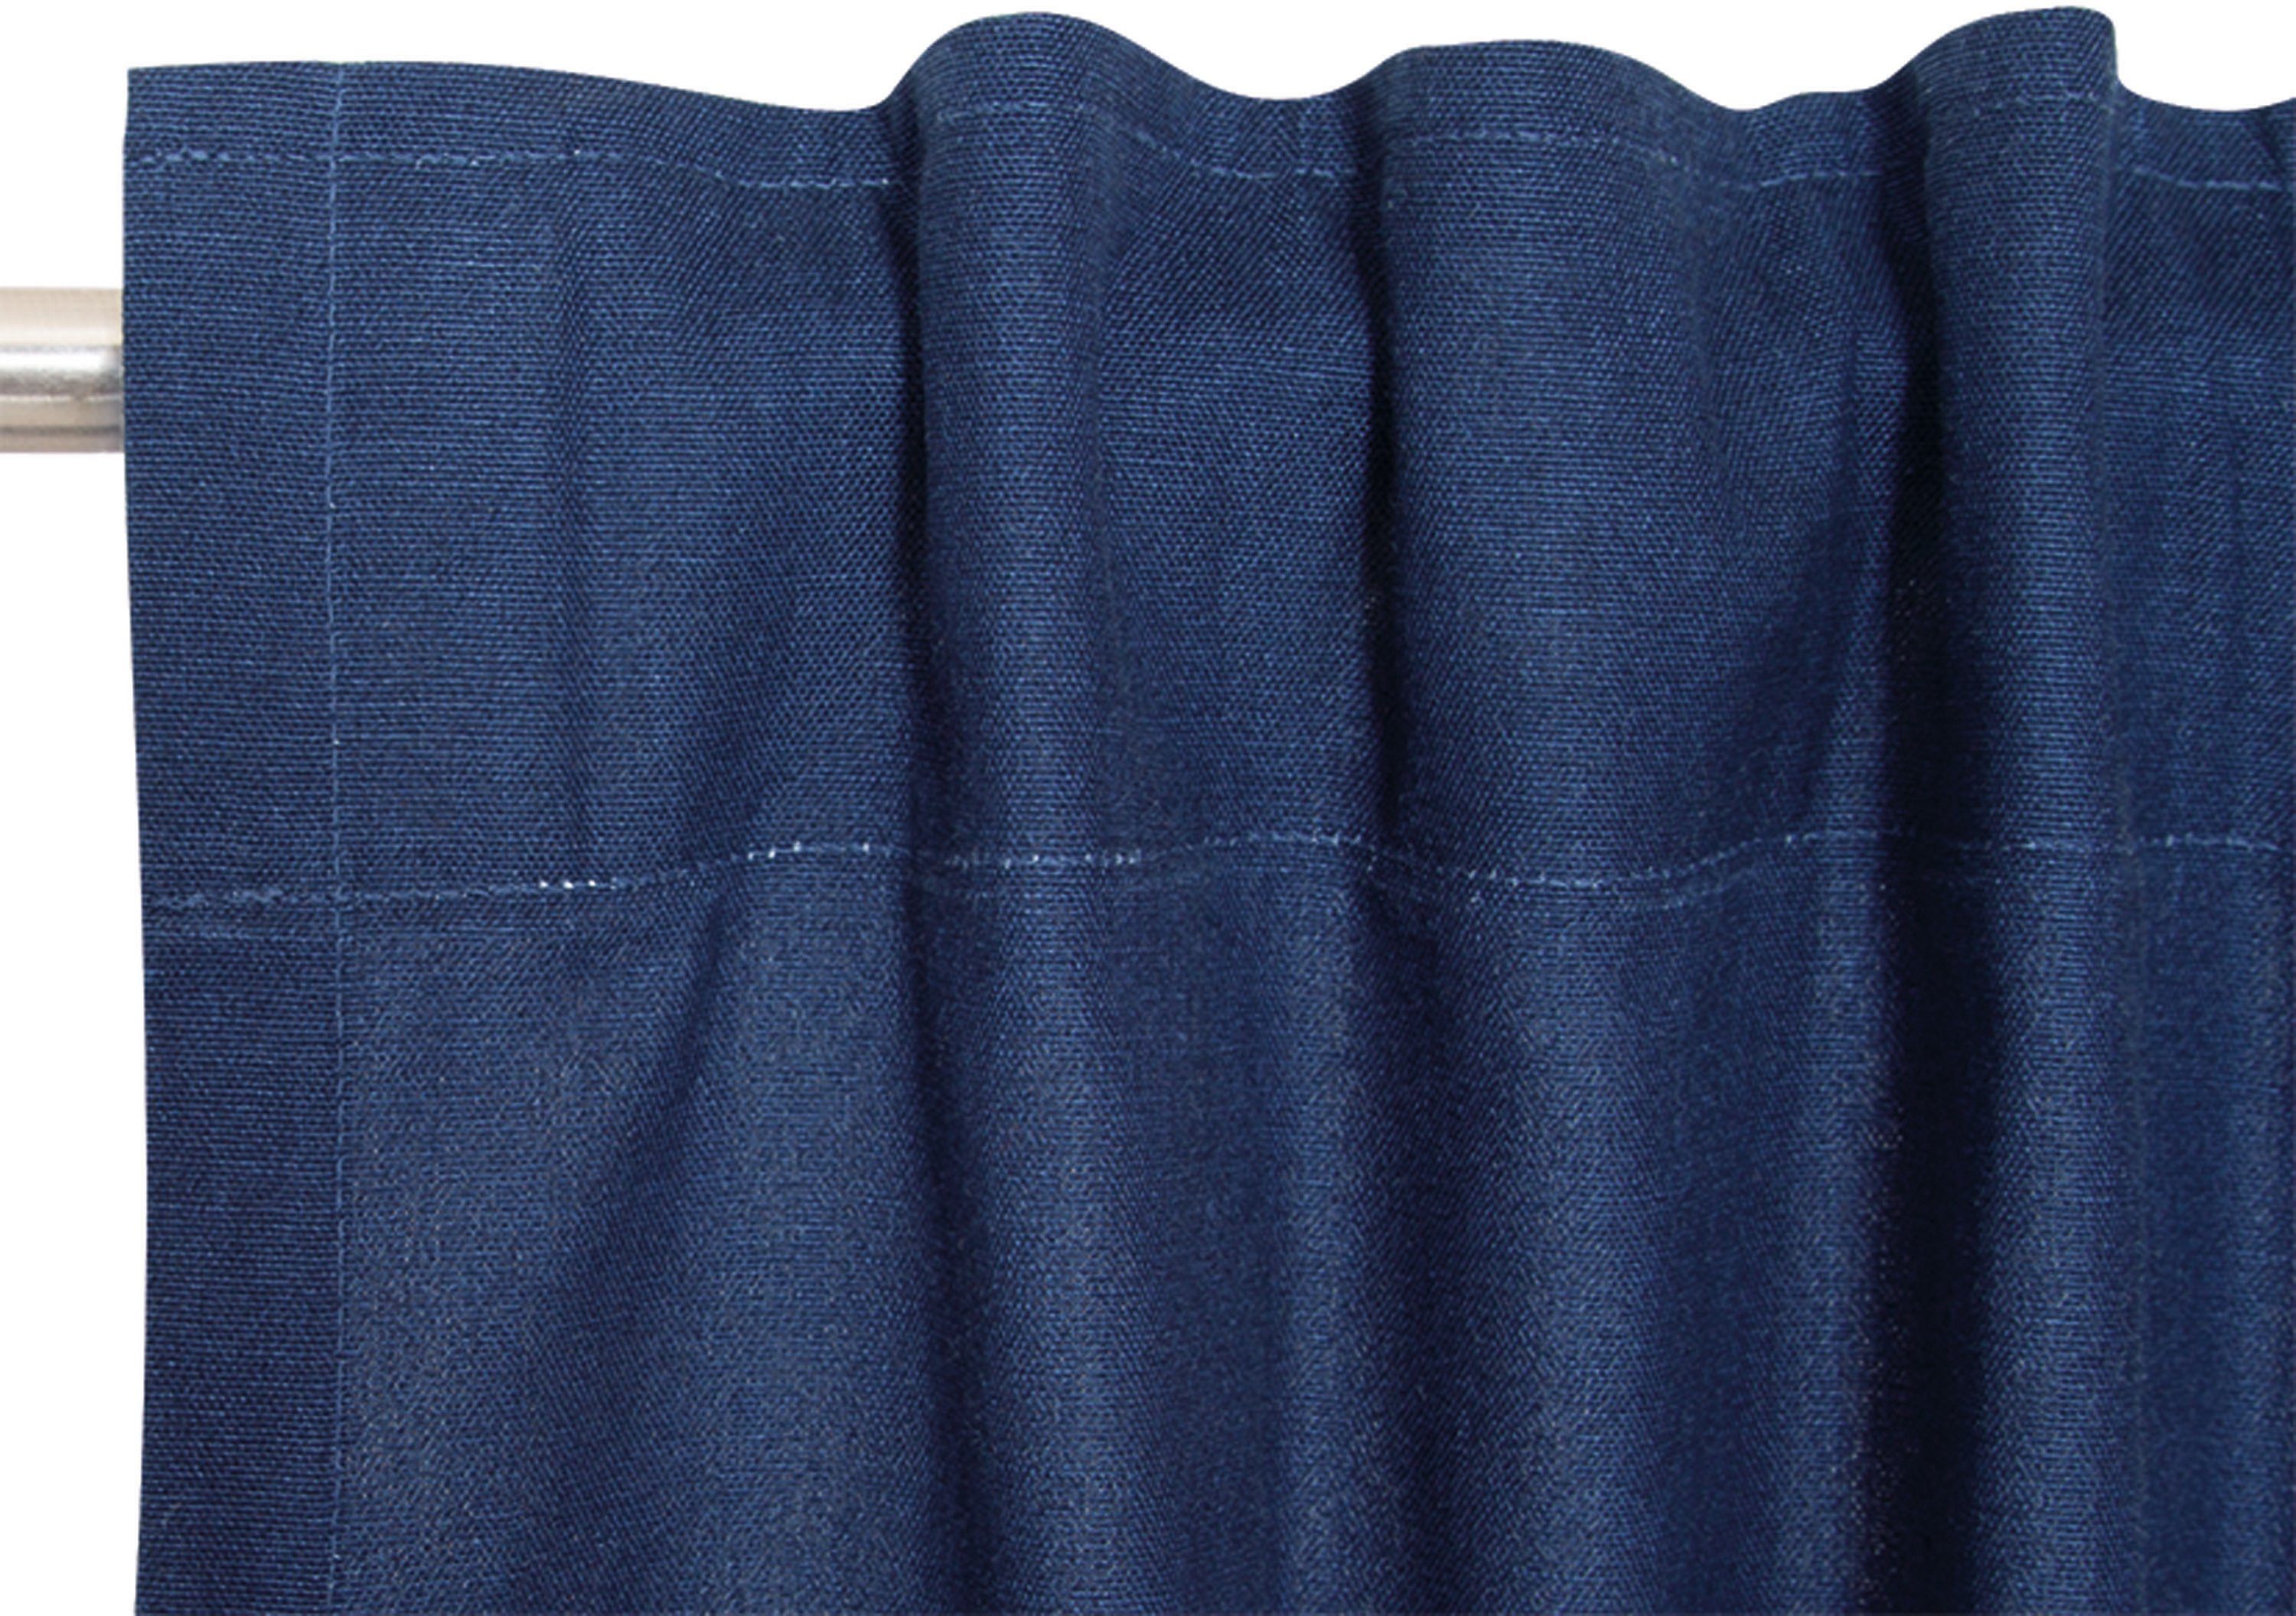 aus Vorhang Esprit, verdeckte Schlaufen nachhaltiger blickdicht, Baumwolle, St), blickdicht Neo, (1 dunkelblau/navy/marine